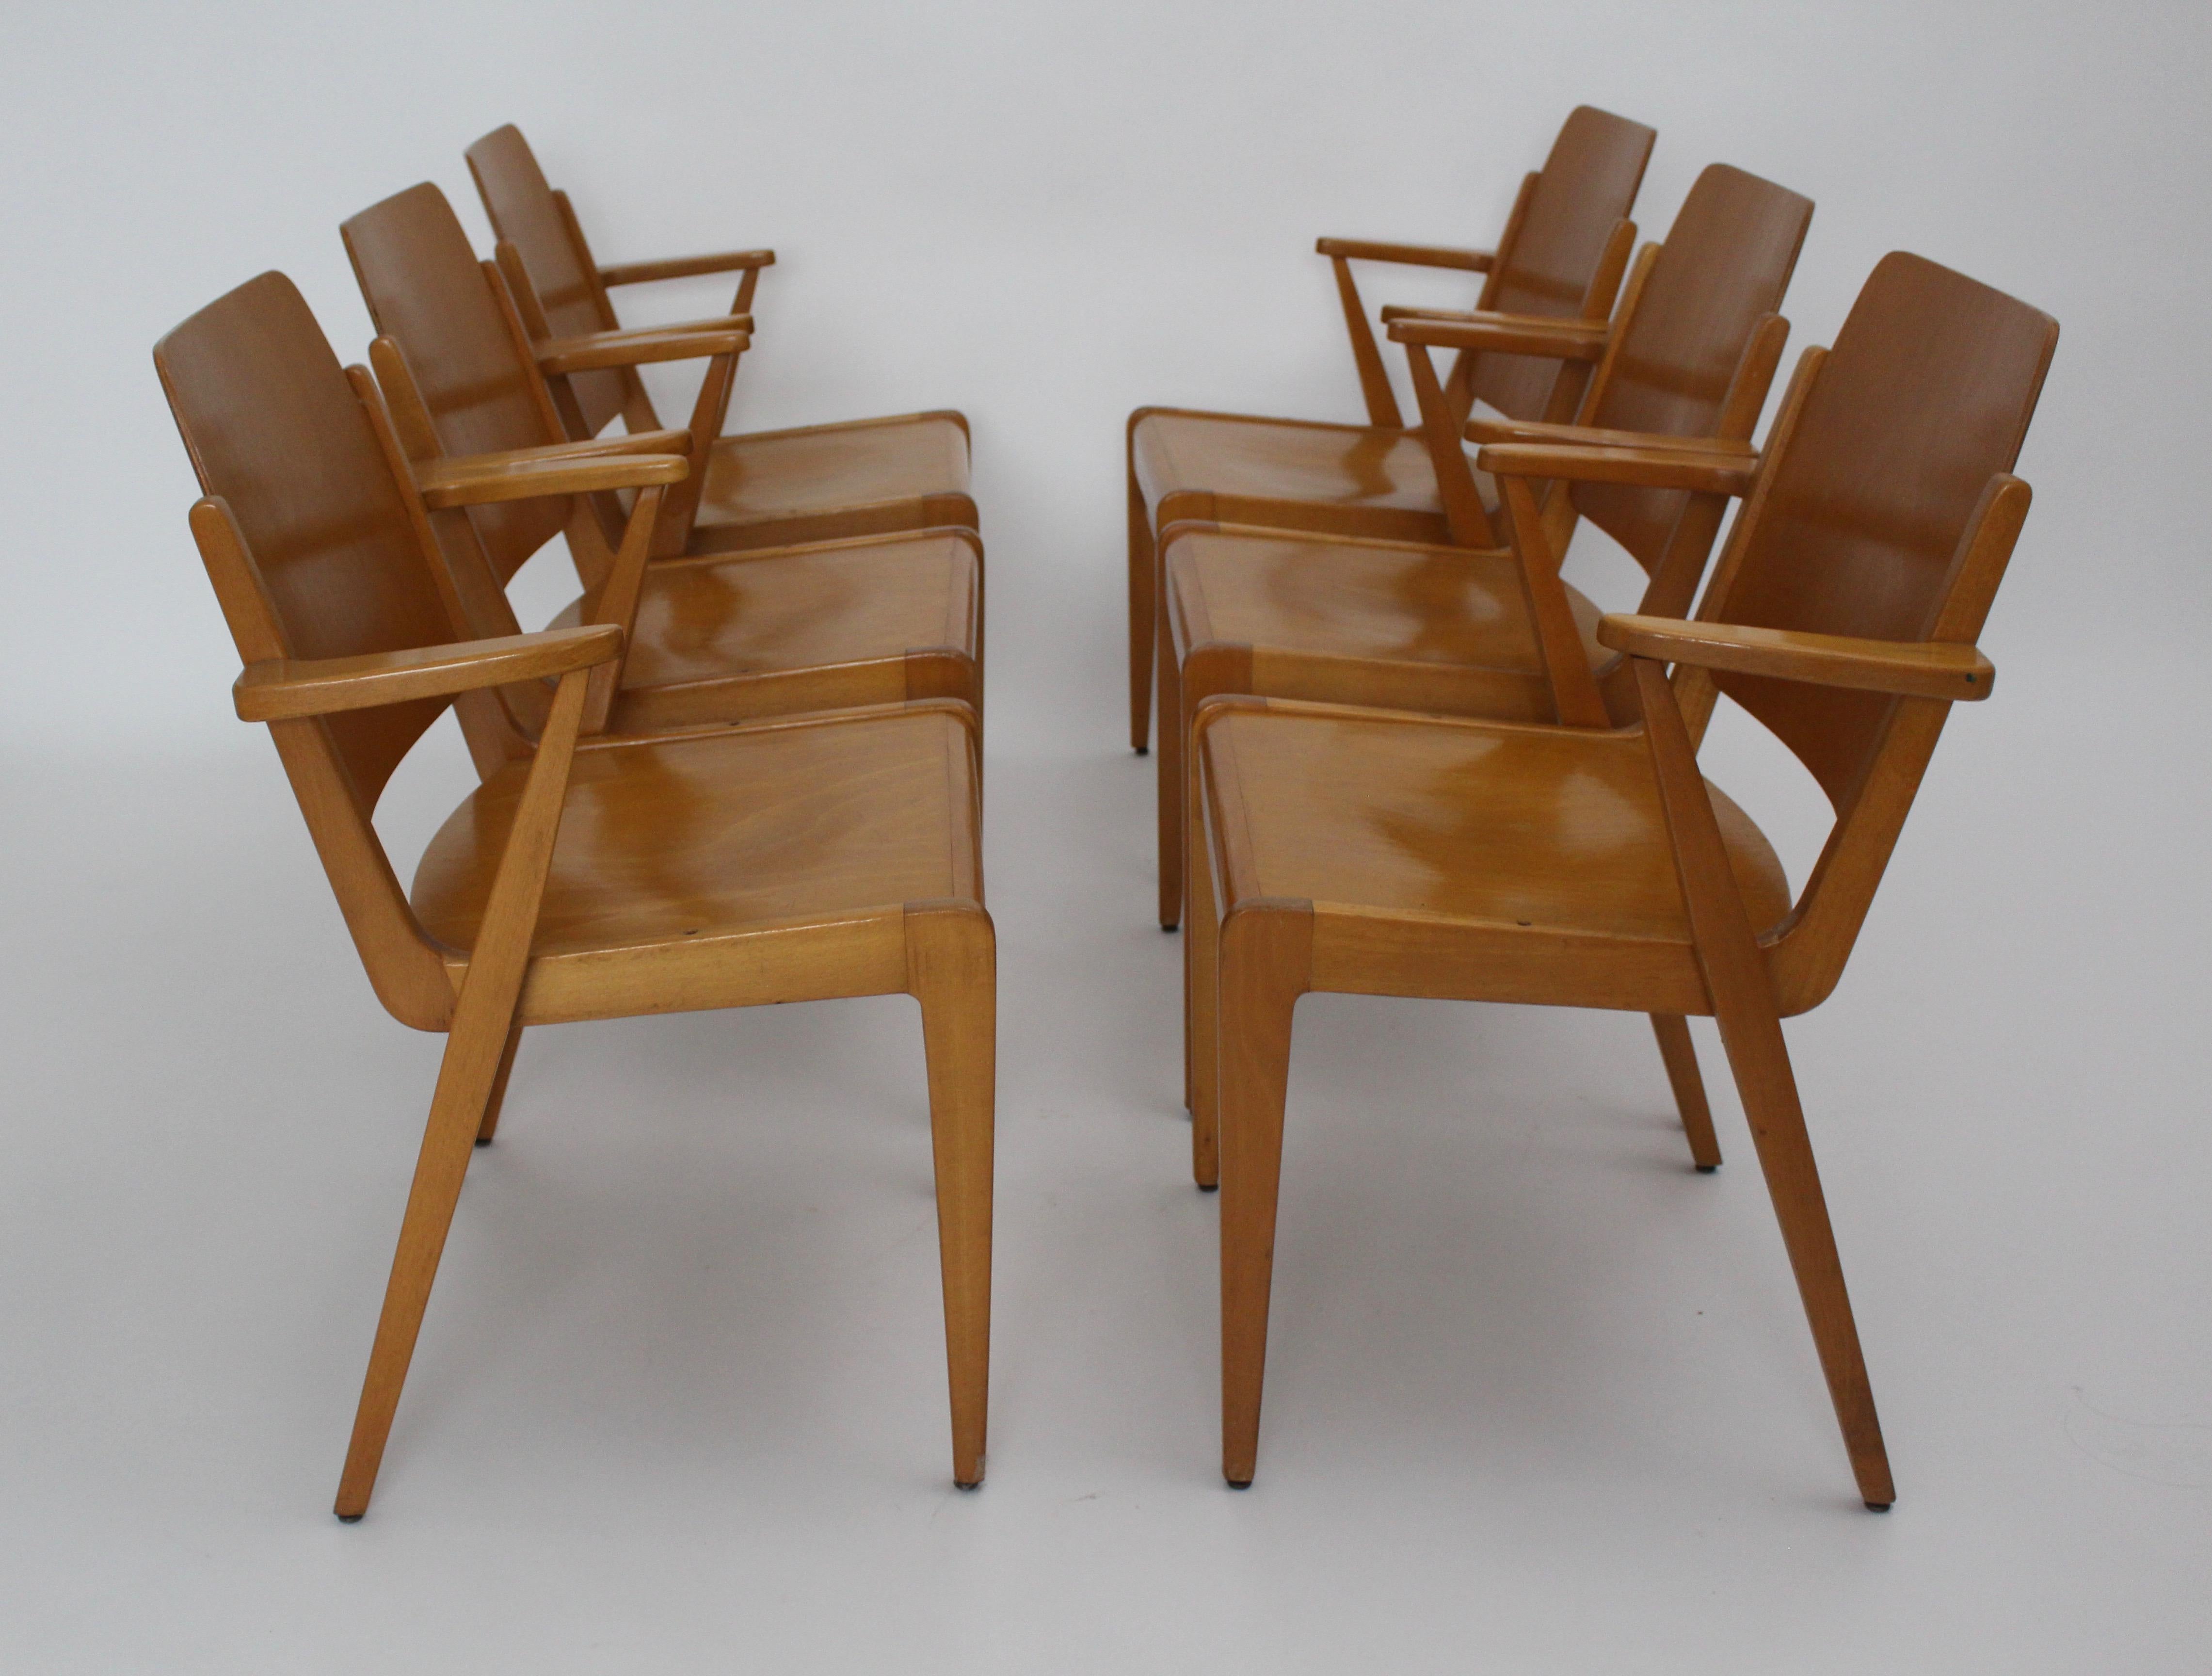 Mid Century Modern Satz von sechs Esszimmerstühlen Modell Austro Stuhl mit Armlehnen entworfen von Franz Schuster und ausgeführt von Wiesner-Hager (mit Label).
Diese Esszimmerstühle sind auch stapelbar.
Die MATERIALIEN sind massives Buchenholz und